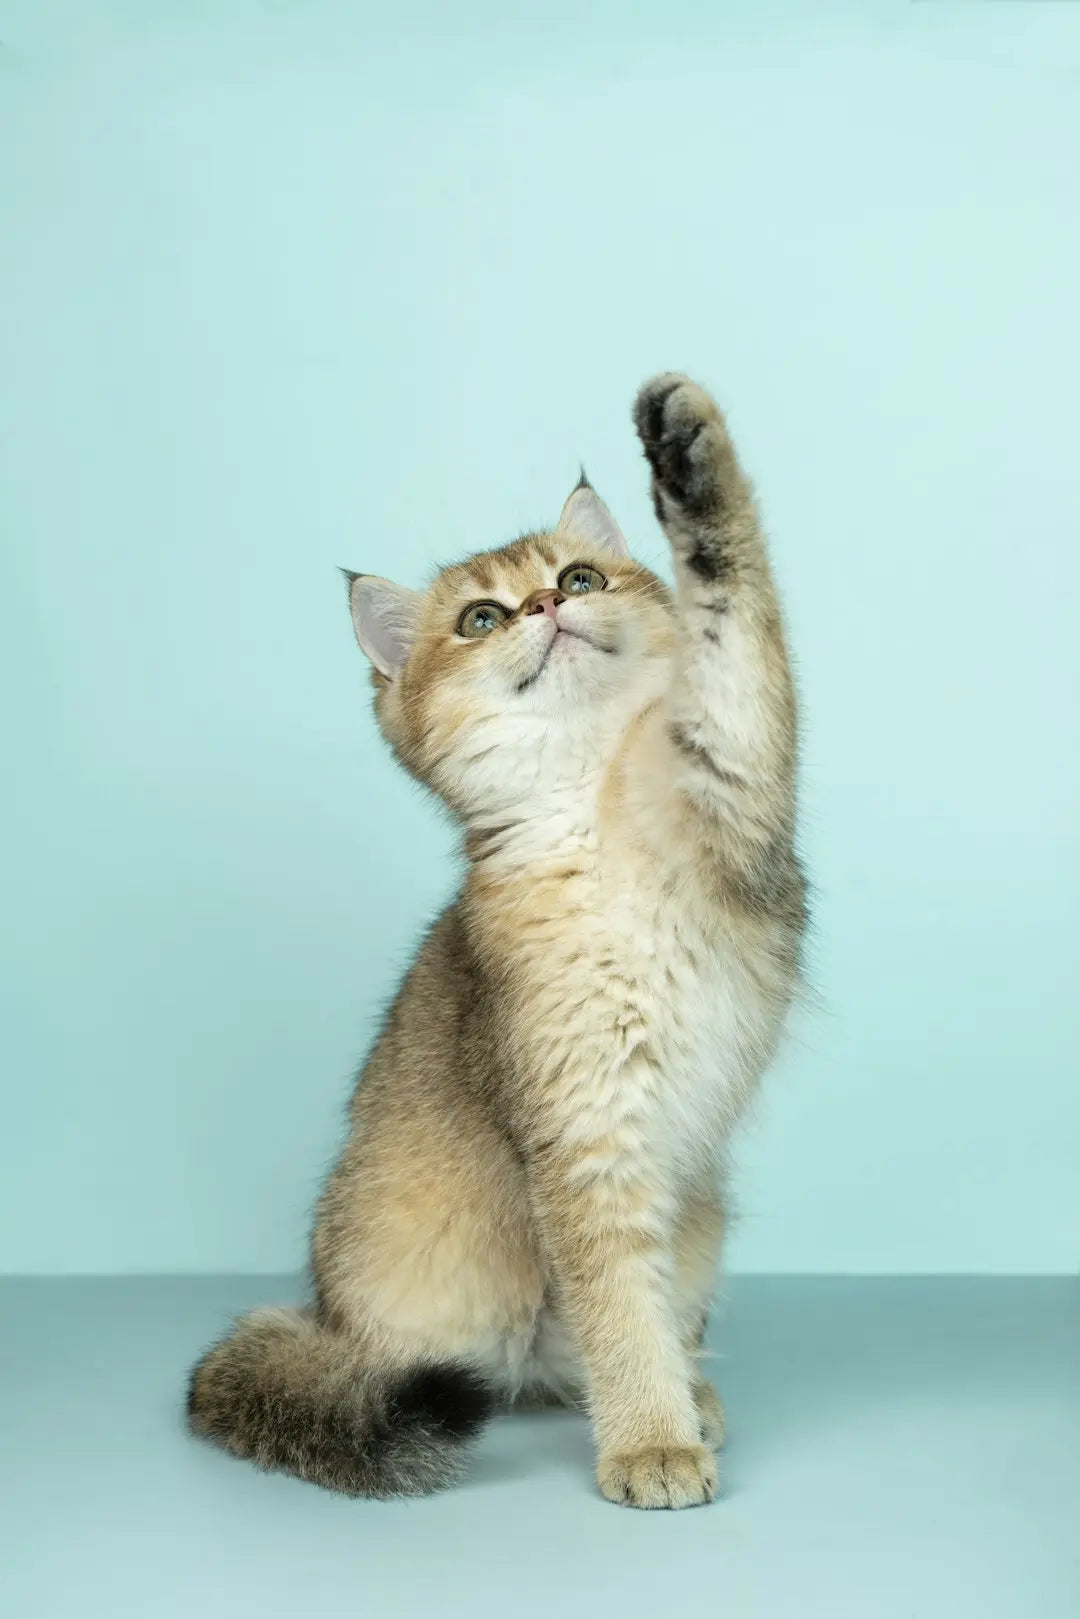 Katzen und ihre Instinkte: Was sie von wilden Katzen lernen können